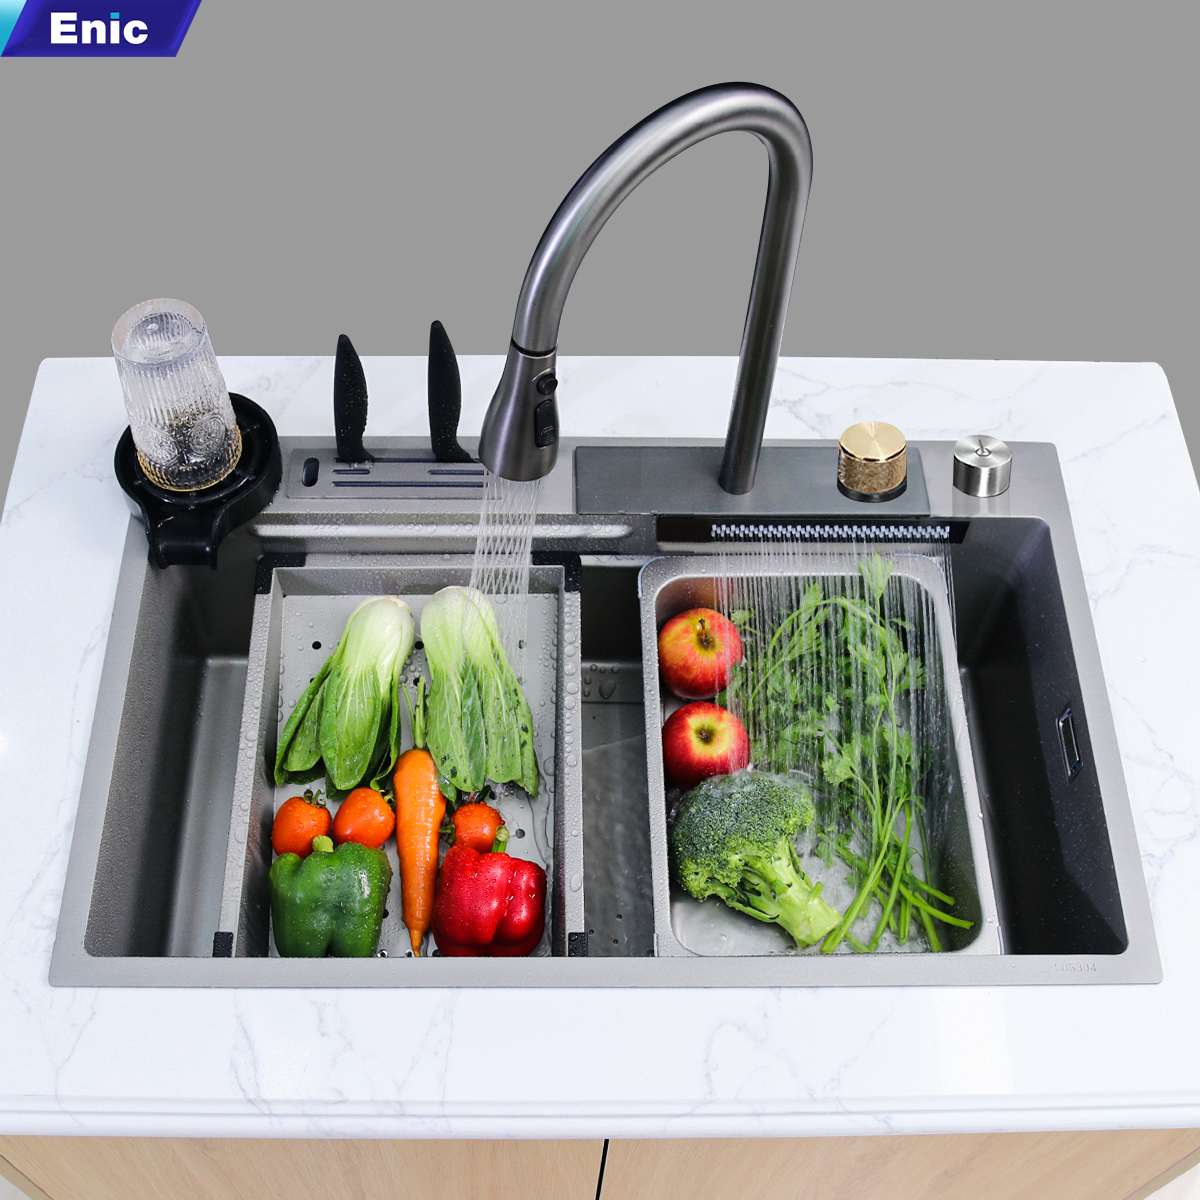 Bồn rửa chén thông minh Enic K2 - Chậu rửa bát inox 1 ngăn lớn, vòi phun thác nước hiện đại, màn hình LED hiển thị nhiệt độ